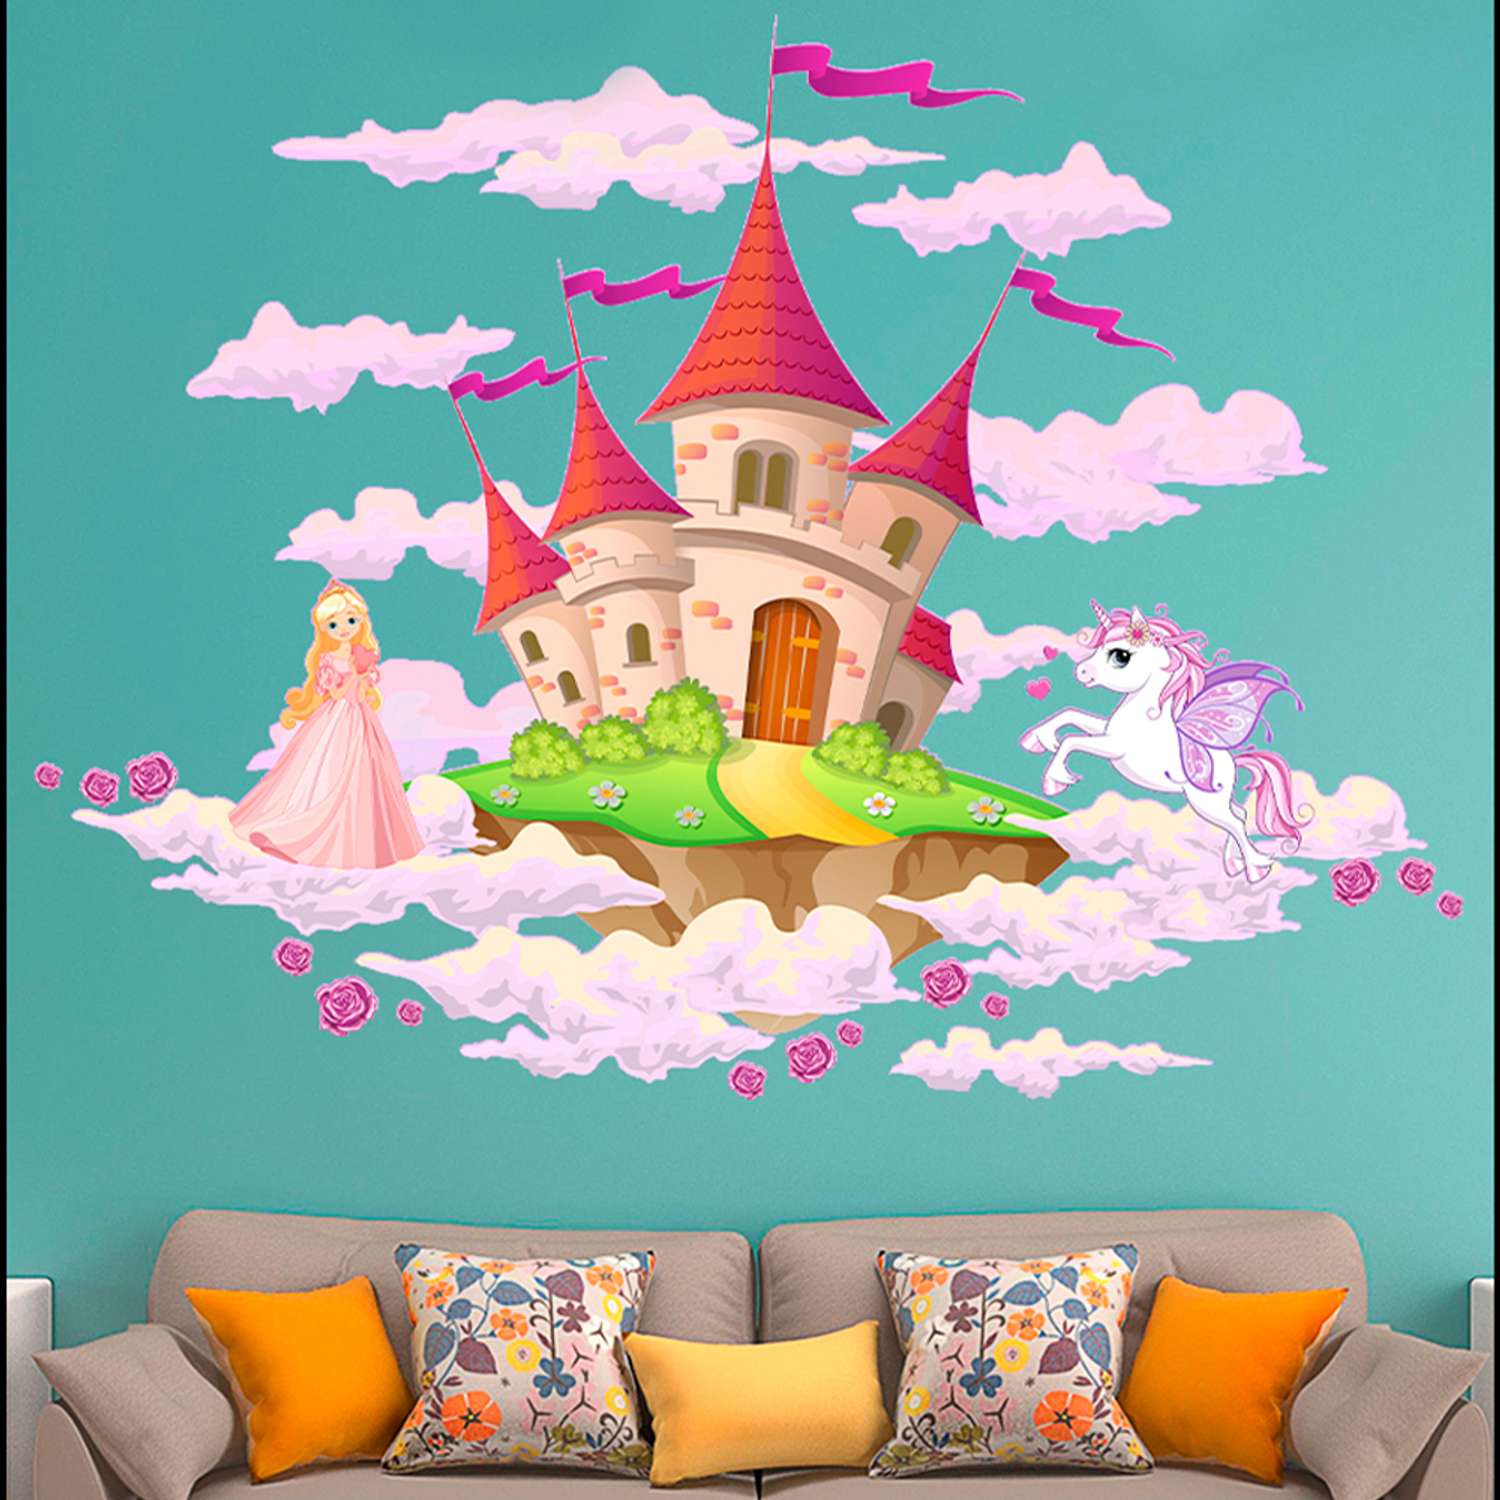 Наклейка интерьерная Woozzee Замок в облаках - фото 3